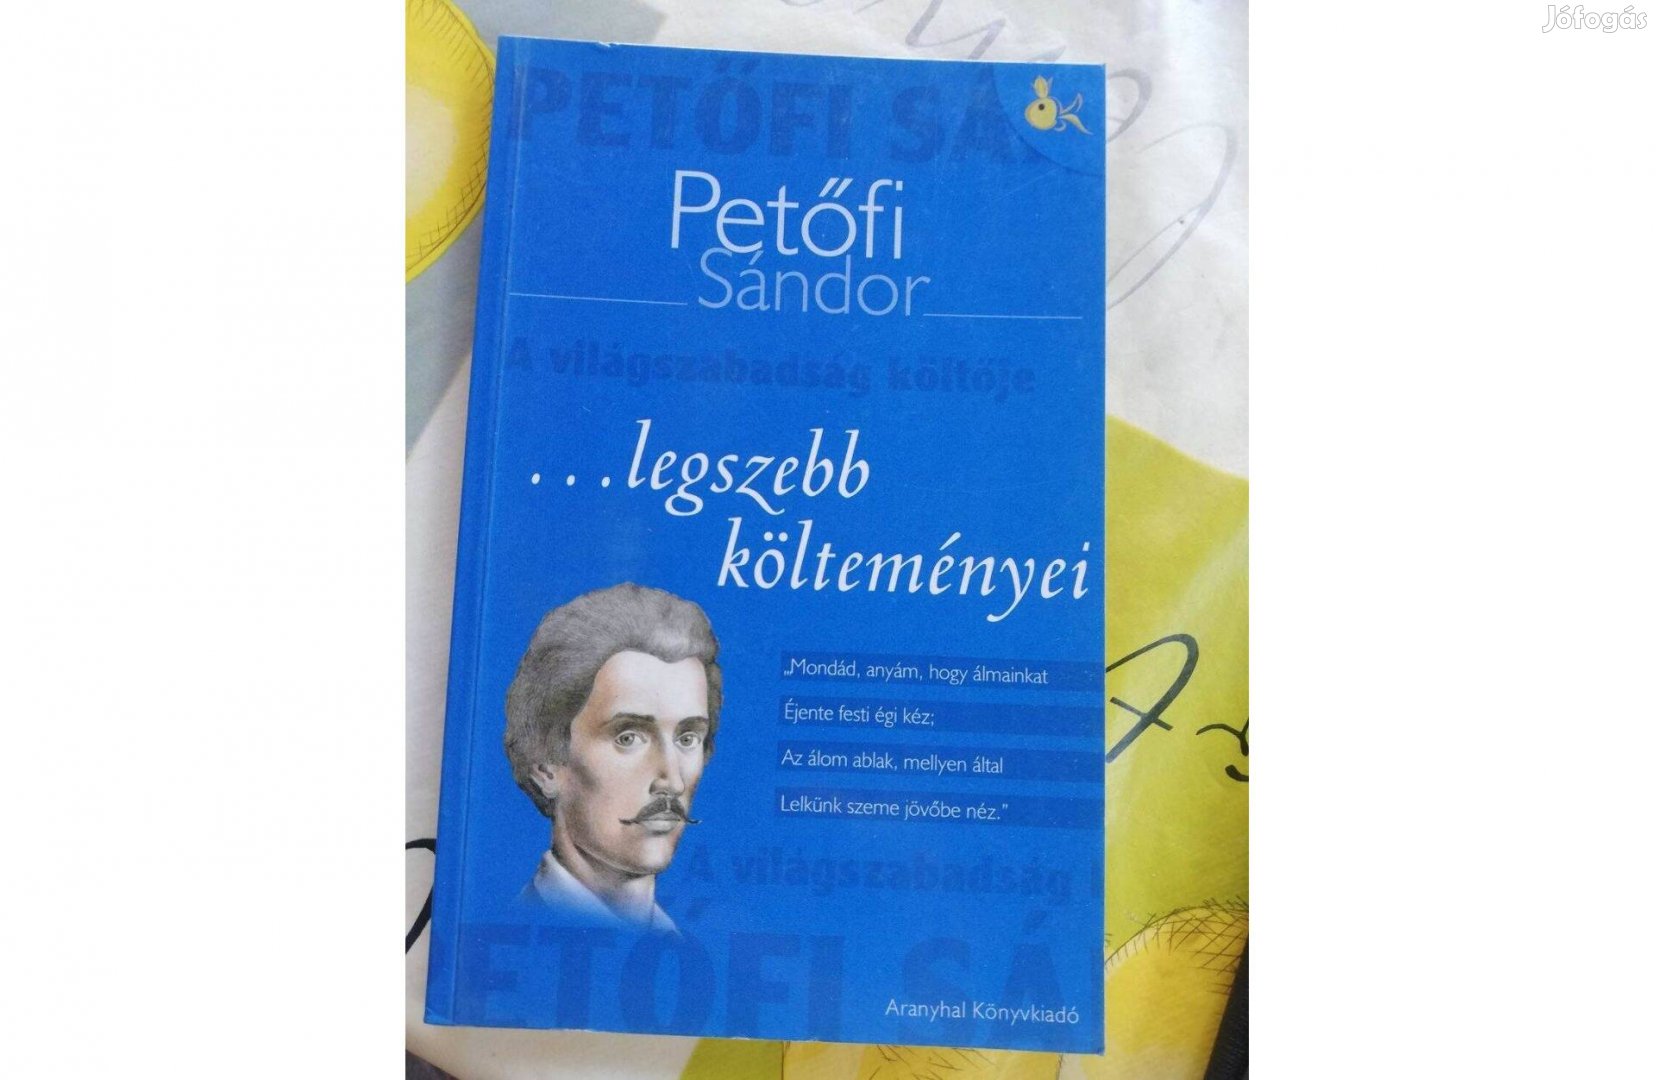 Petőfi Sándor legszebb költeményei 500 forintért eladó